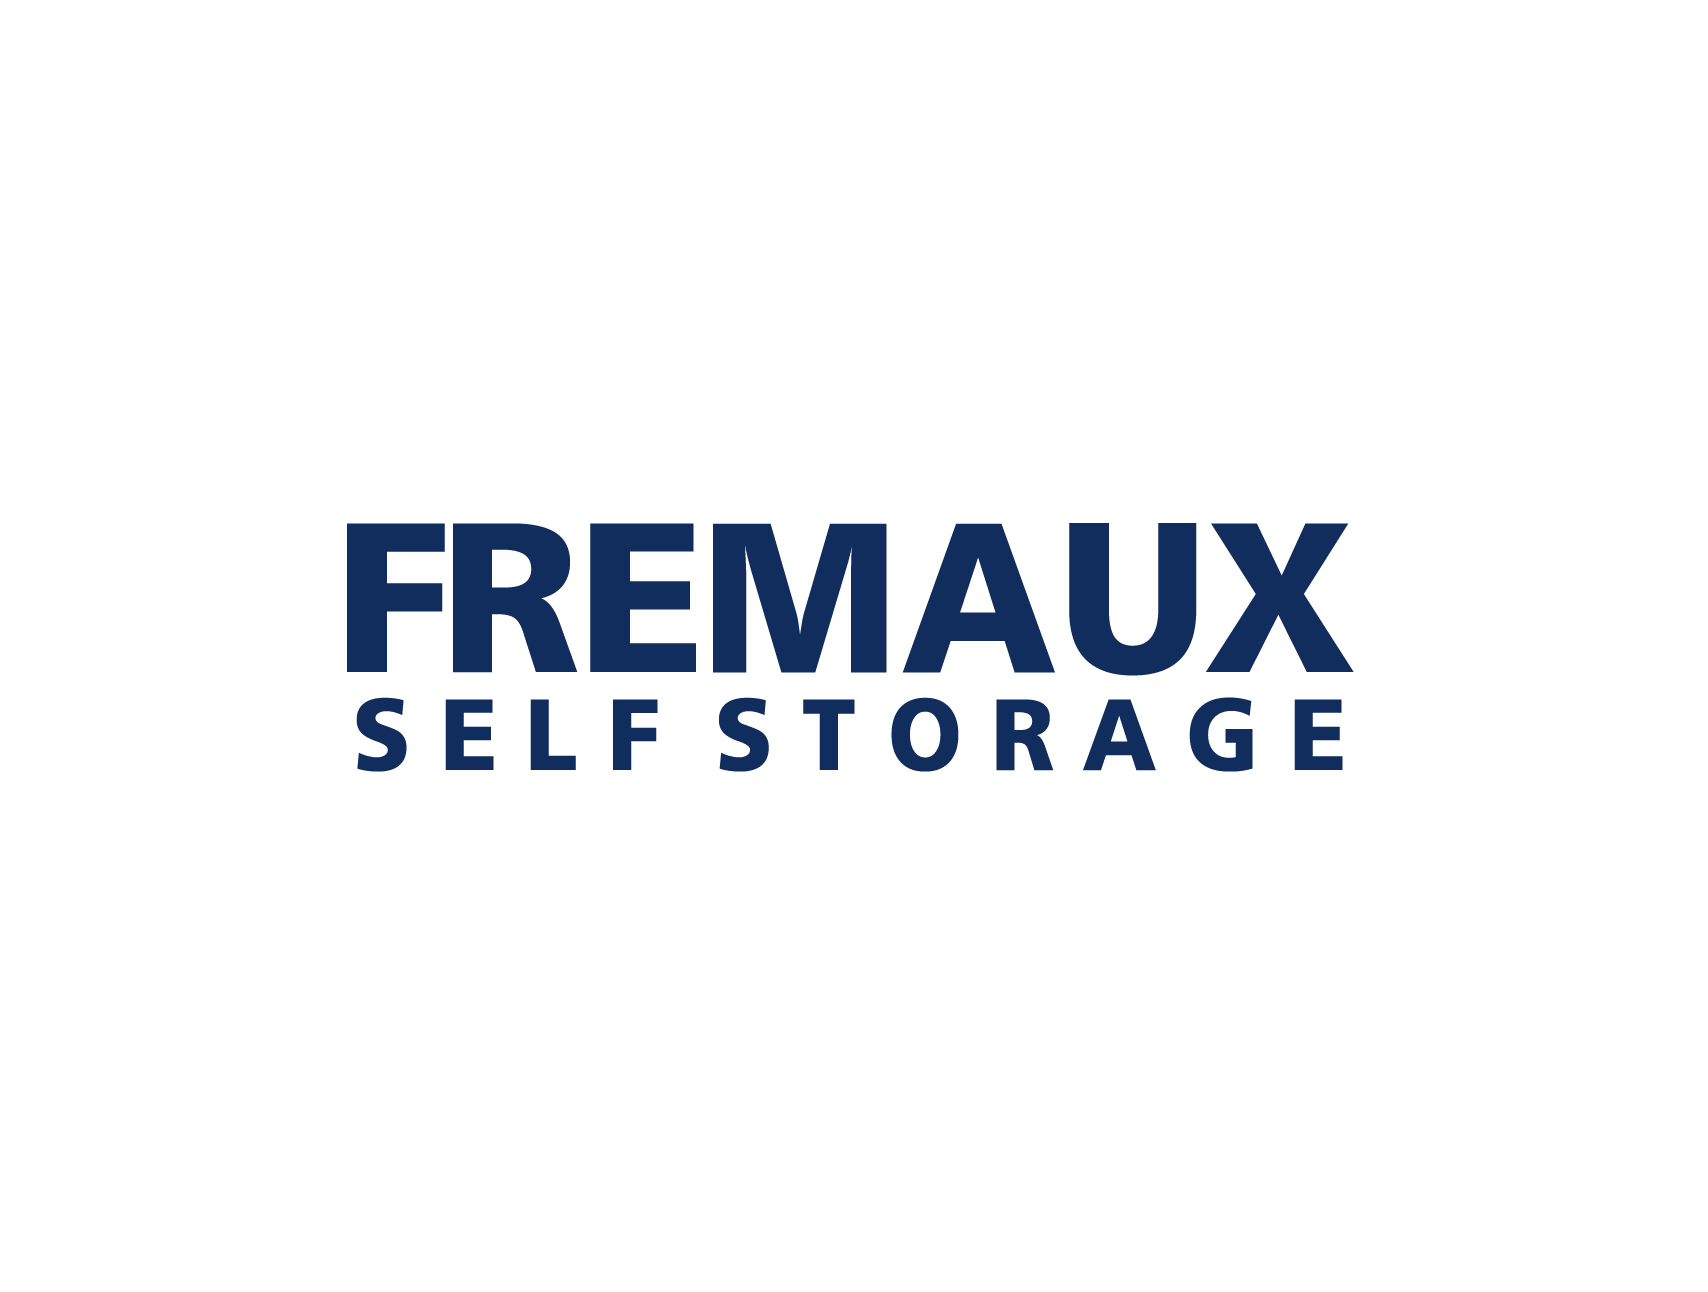 fremaux self storage